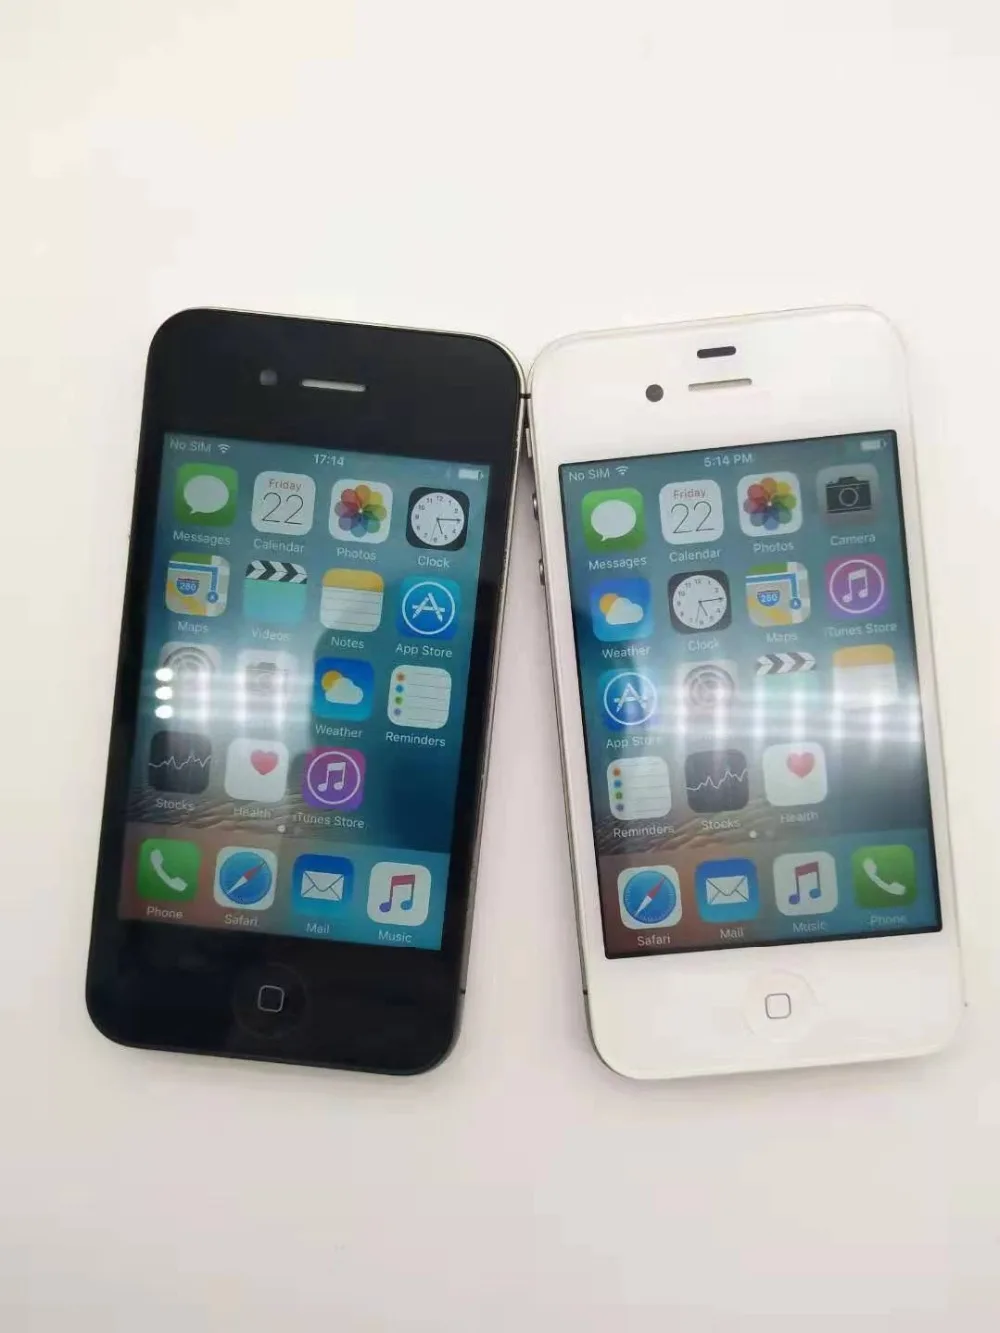 IPhone4S завод разблокированный Apple iPhone 4S IOS двухъядерный 8MP wifi WCDMA мобильный телефон сенсорный экран iCloud Восстановленный